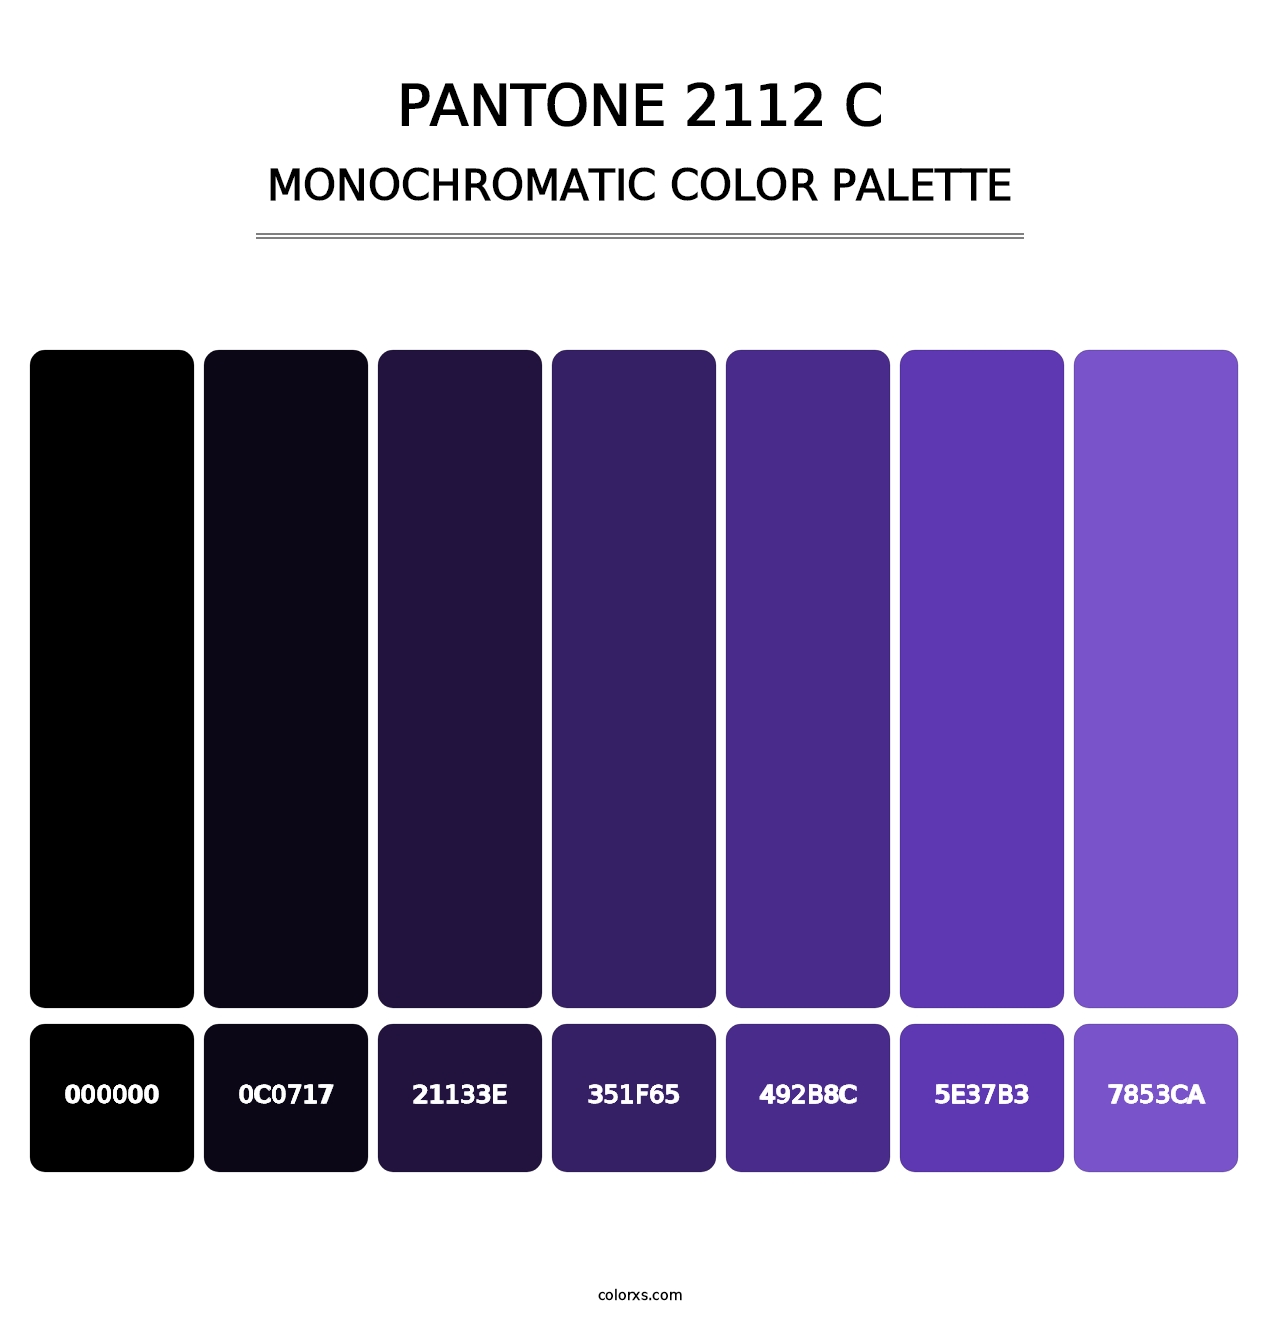 PANTONE 2112 C - Monochromatic Color Palette